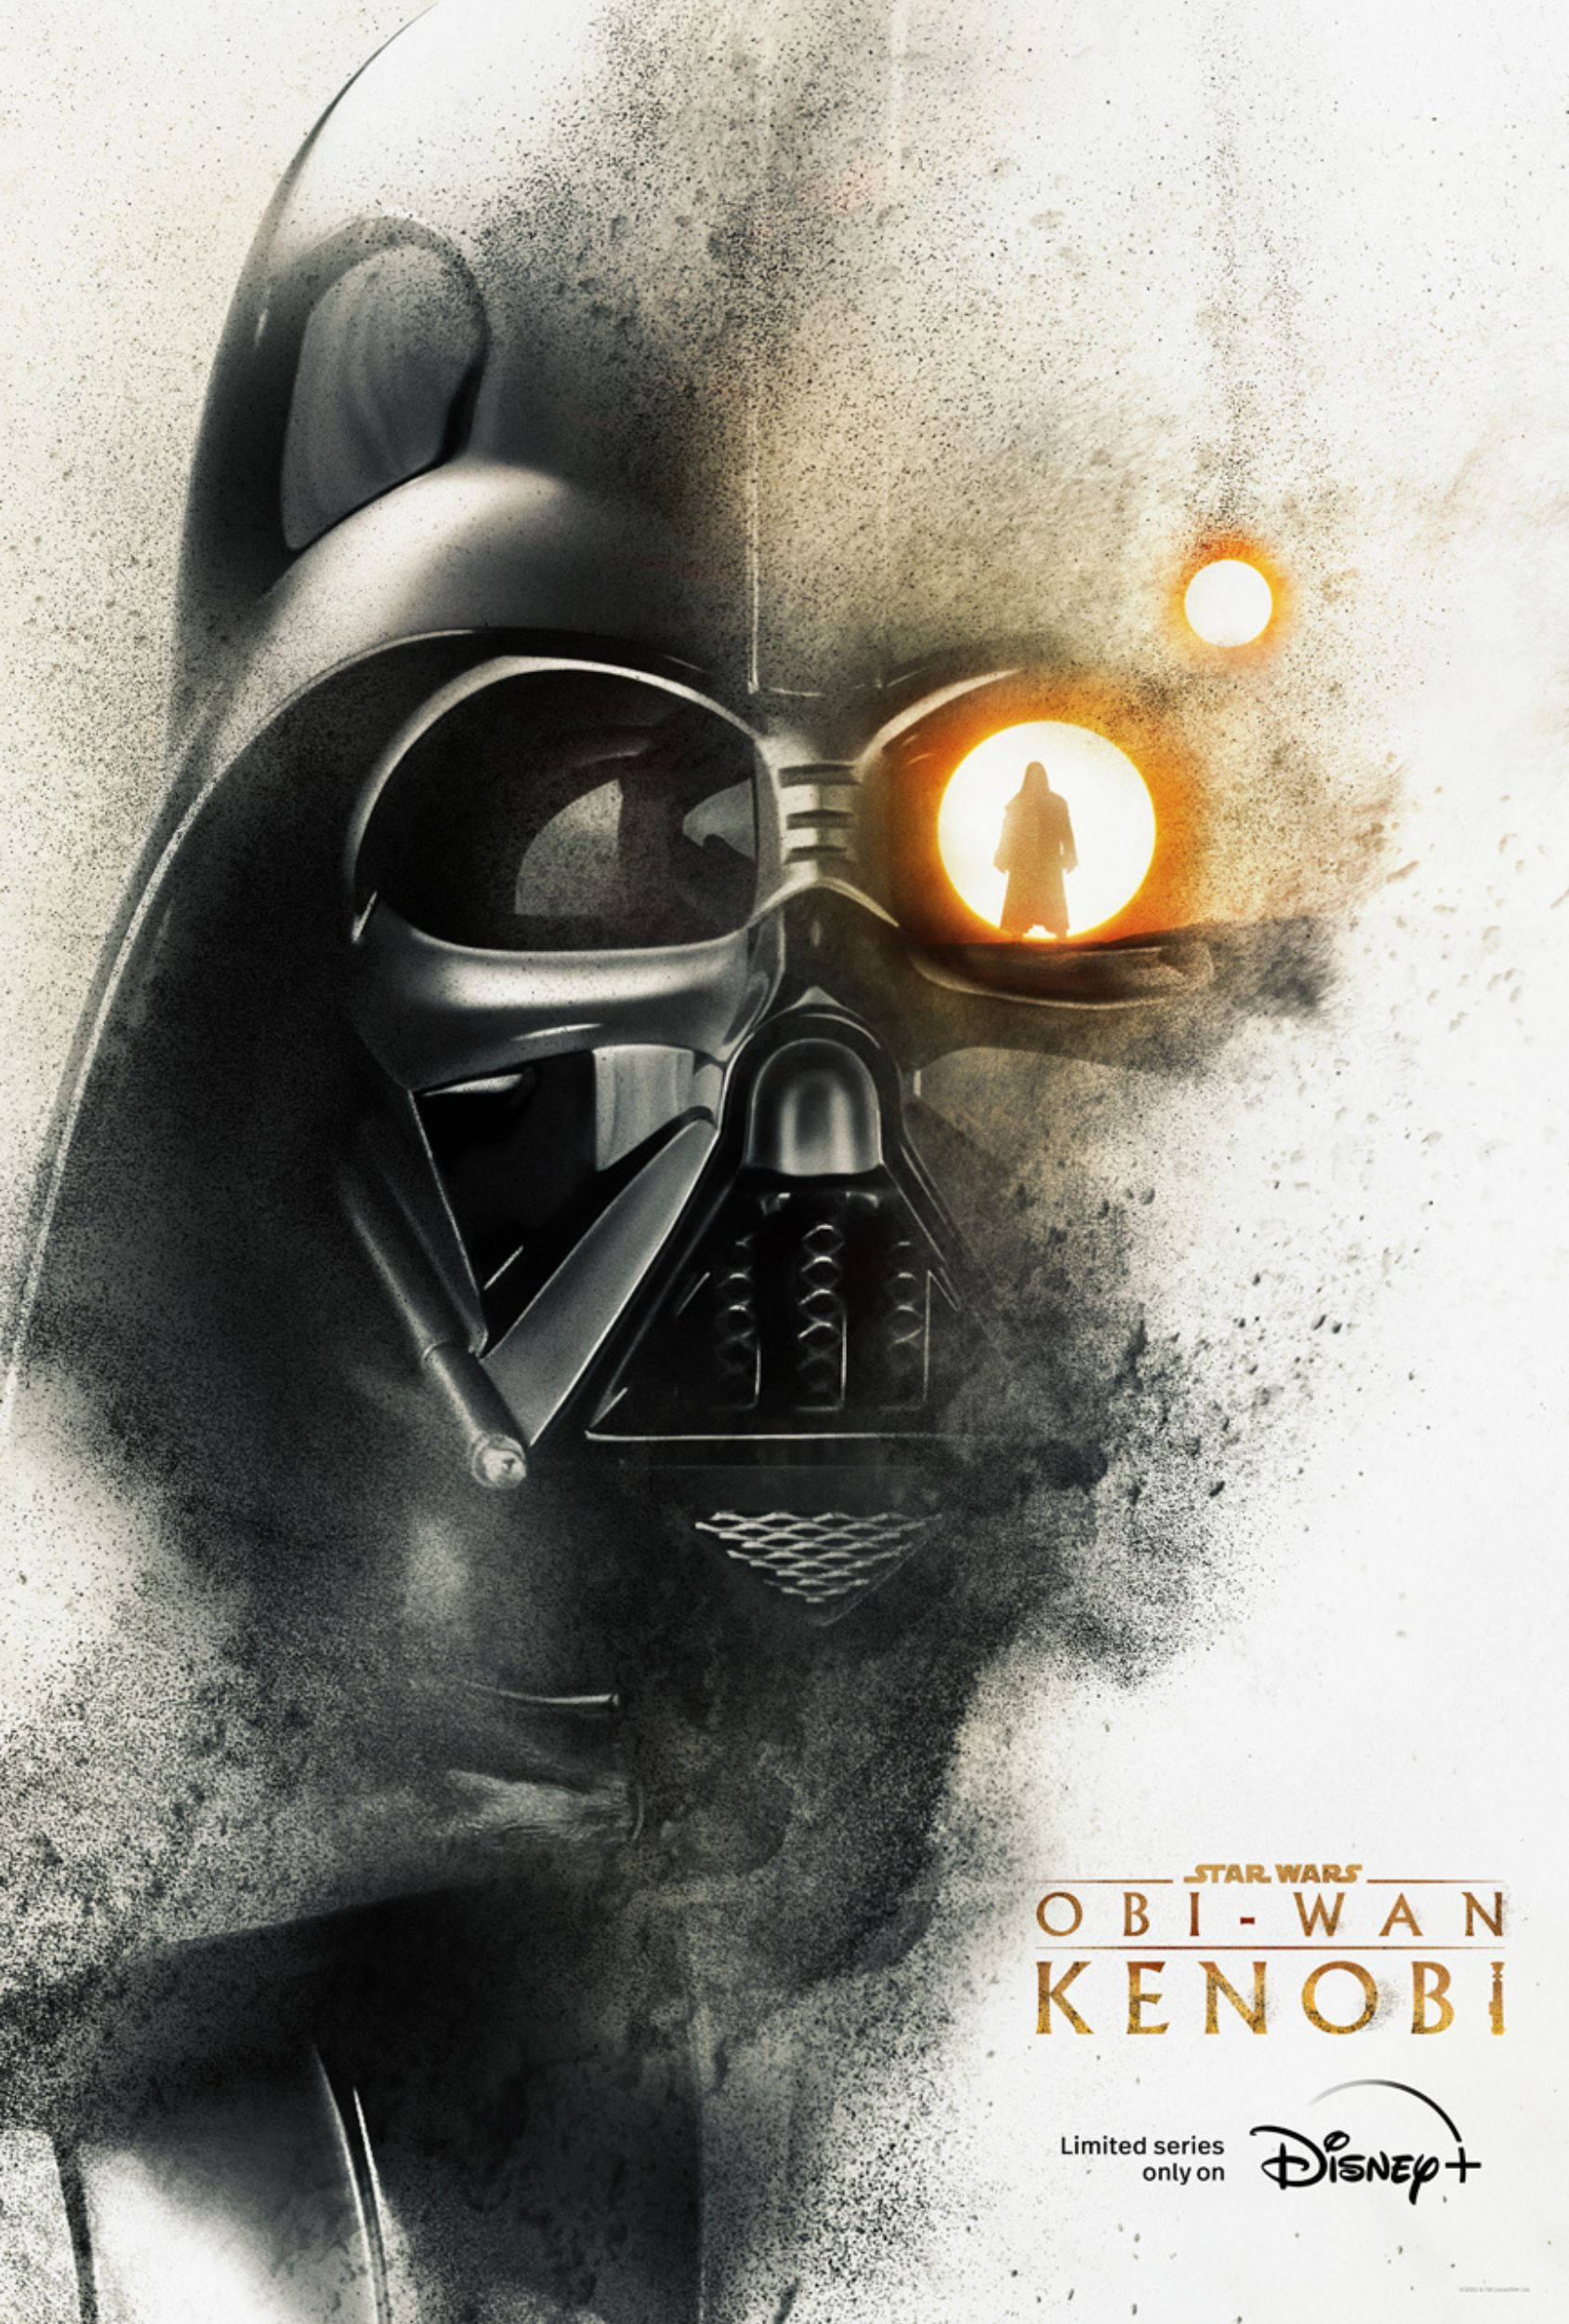 Download Obi Wan Kenobi Darth Vader Wallpaper